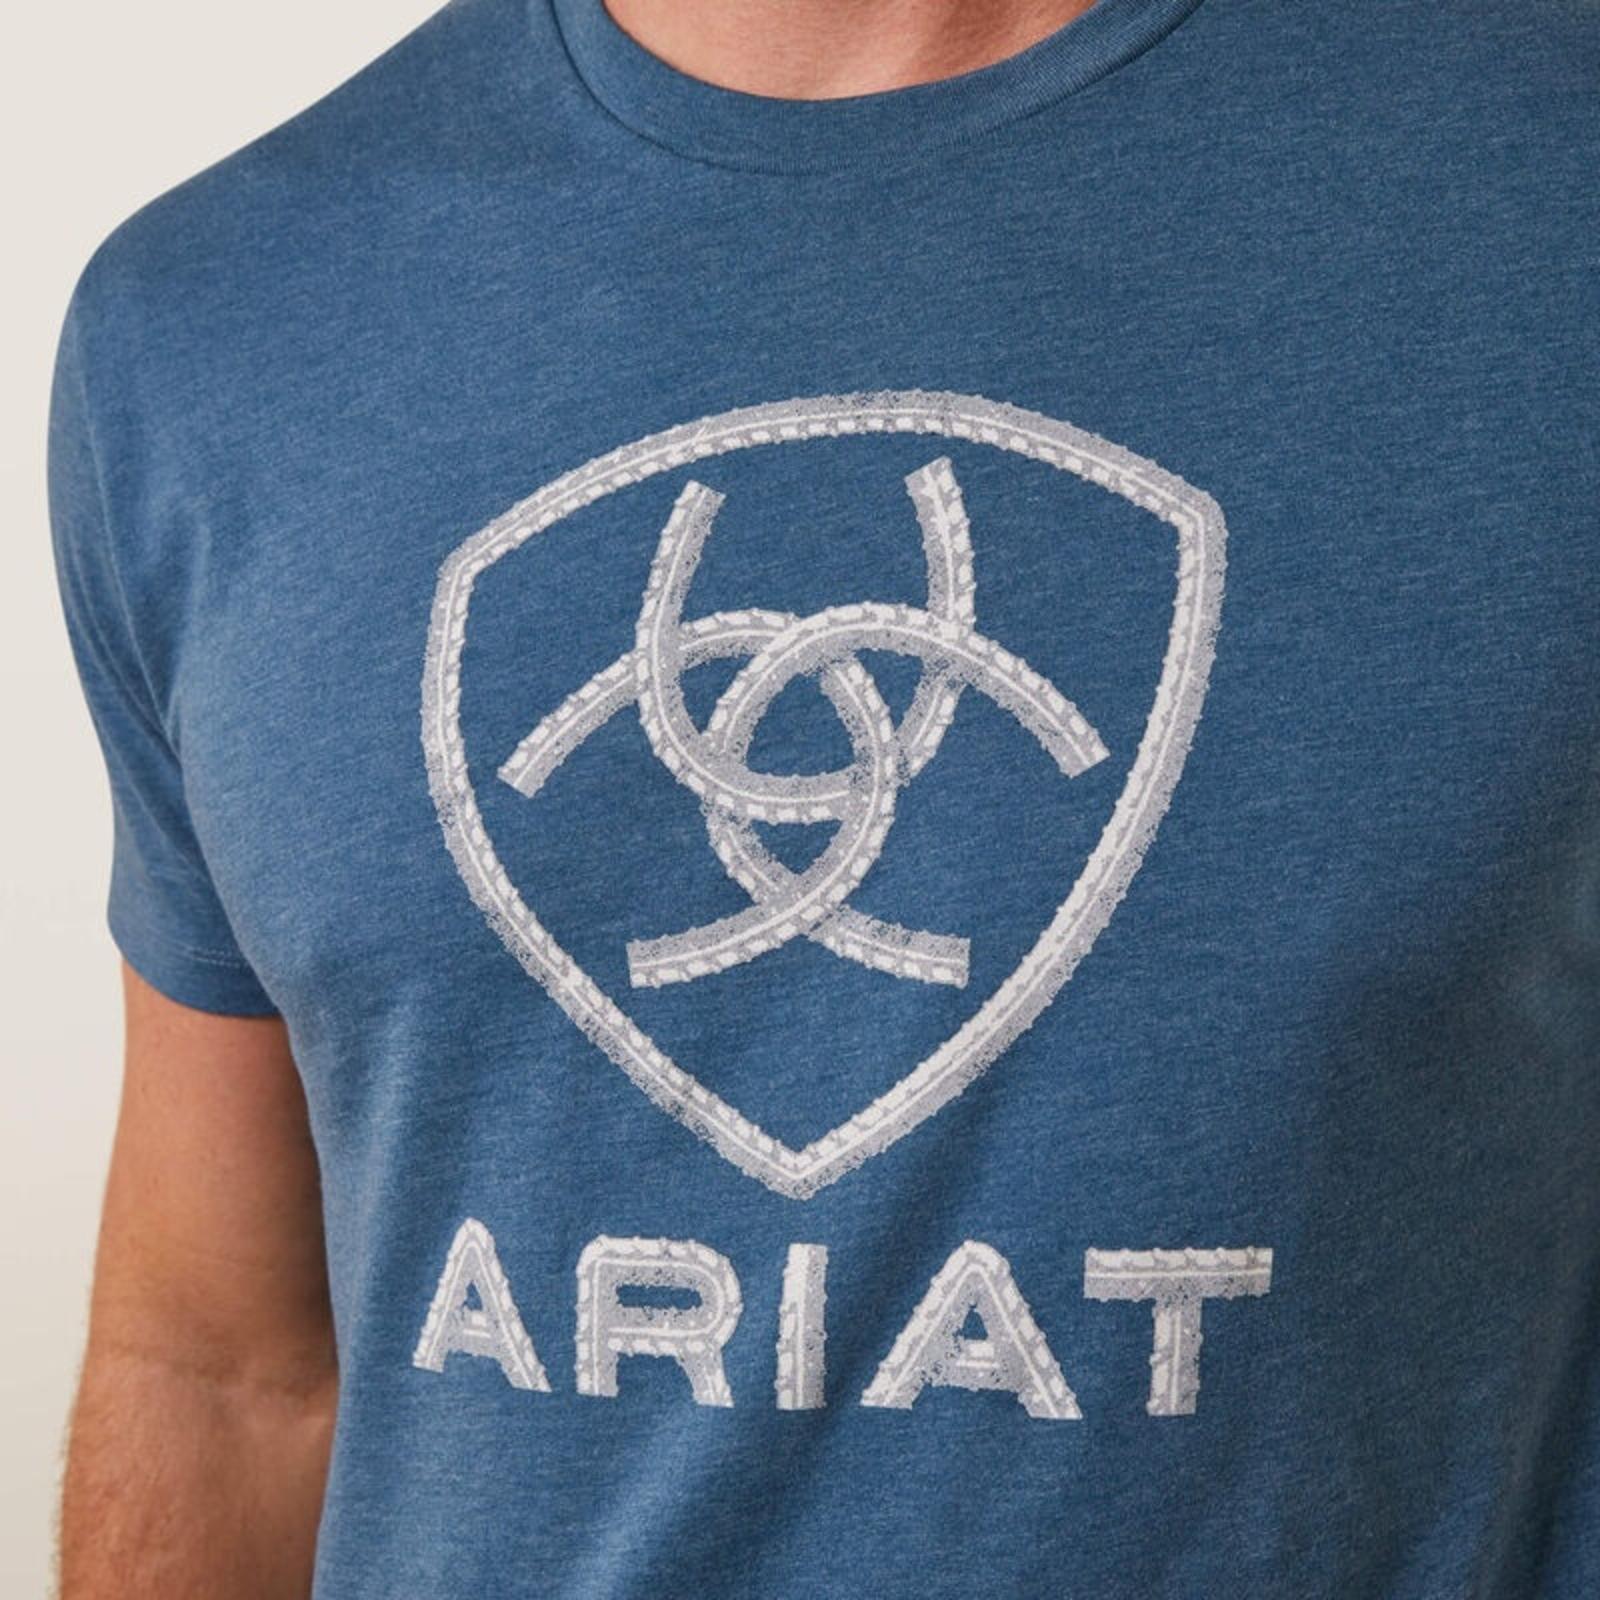 Ariat Men's Steel Bar Logo T-Shirt